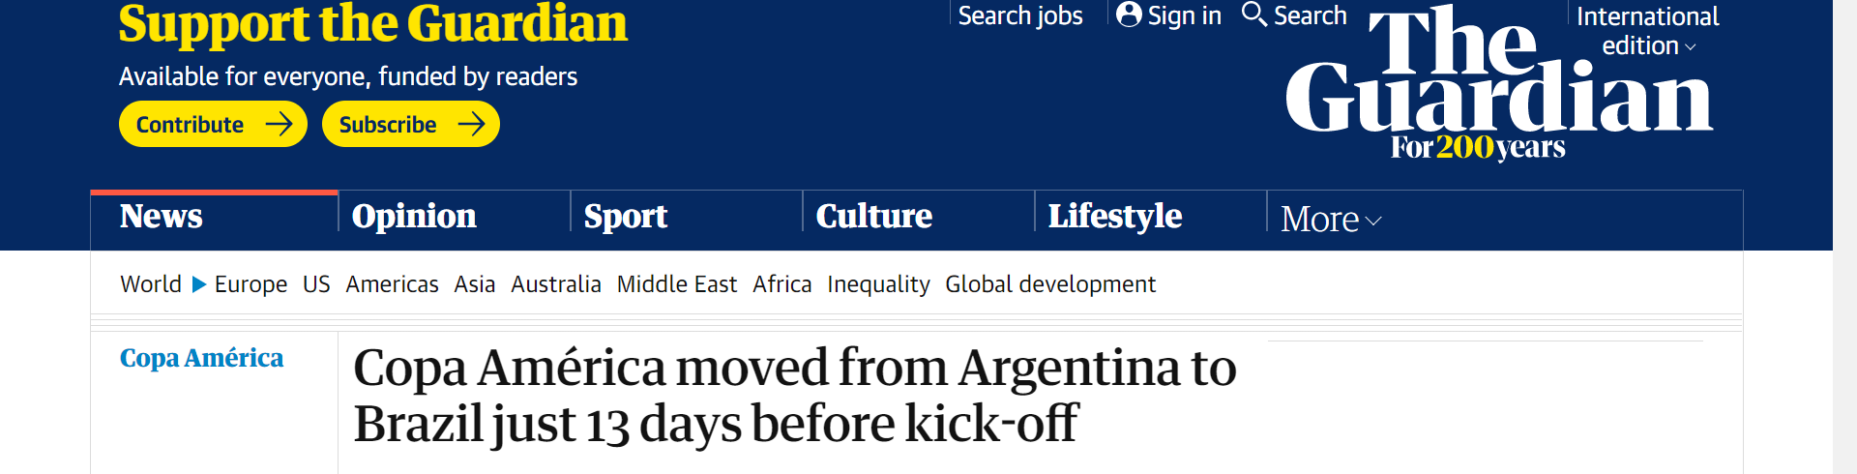 Os ingleses do The Guardian também, junto da notícia da mudança de sede desta Copa América, cita as mais de 400 mil mortes por Covid-19 no Brasil.